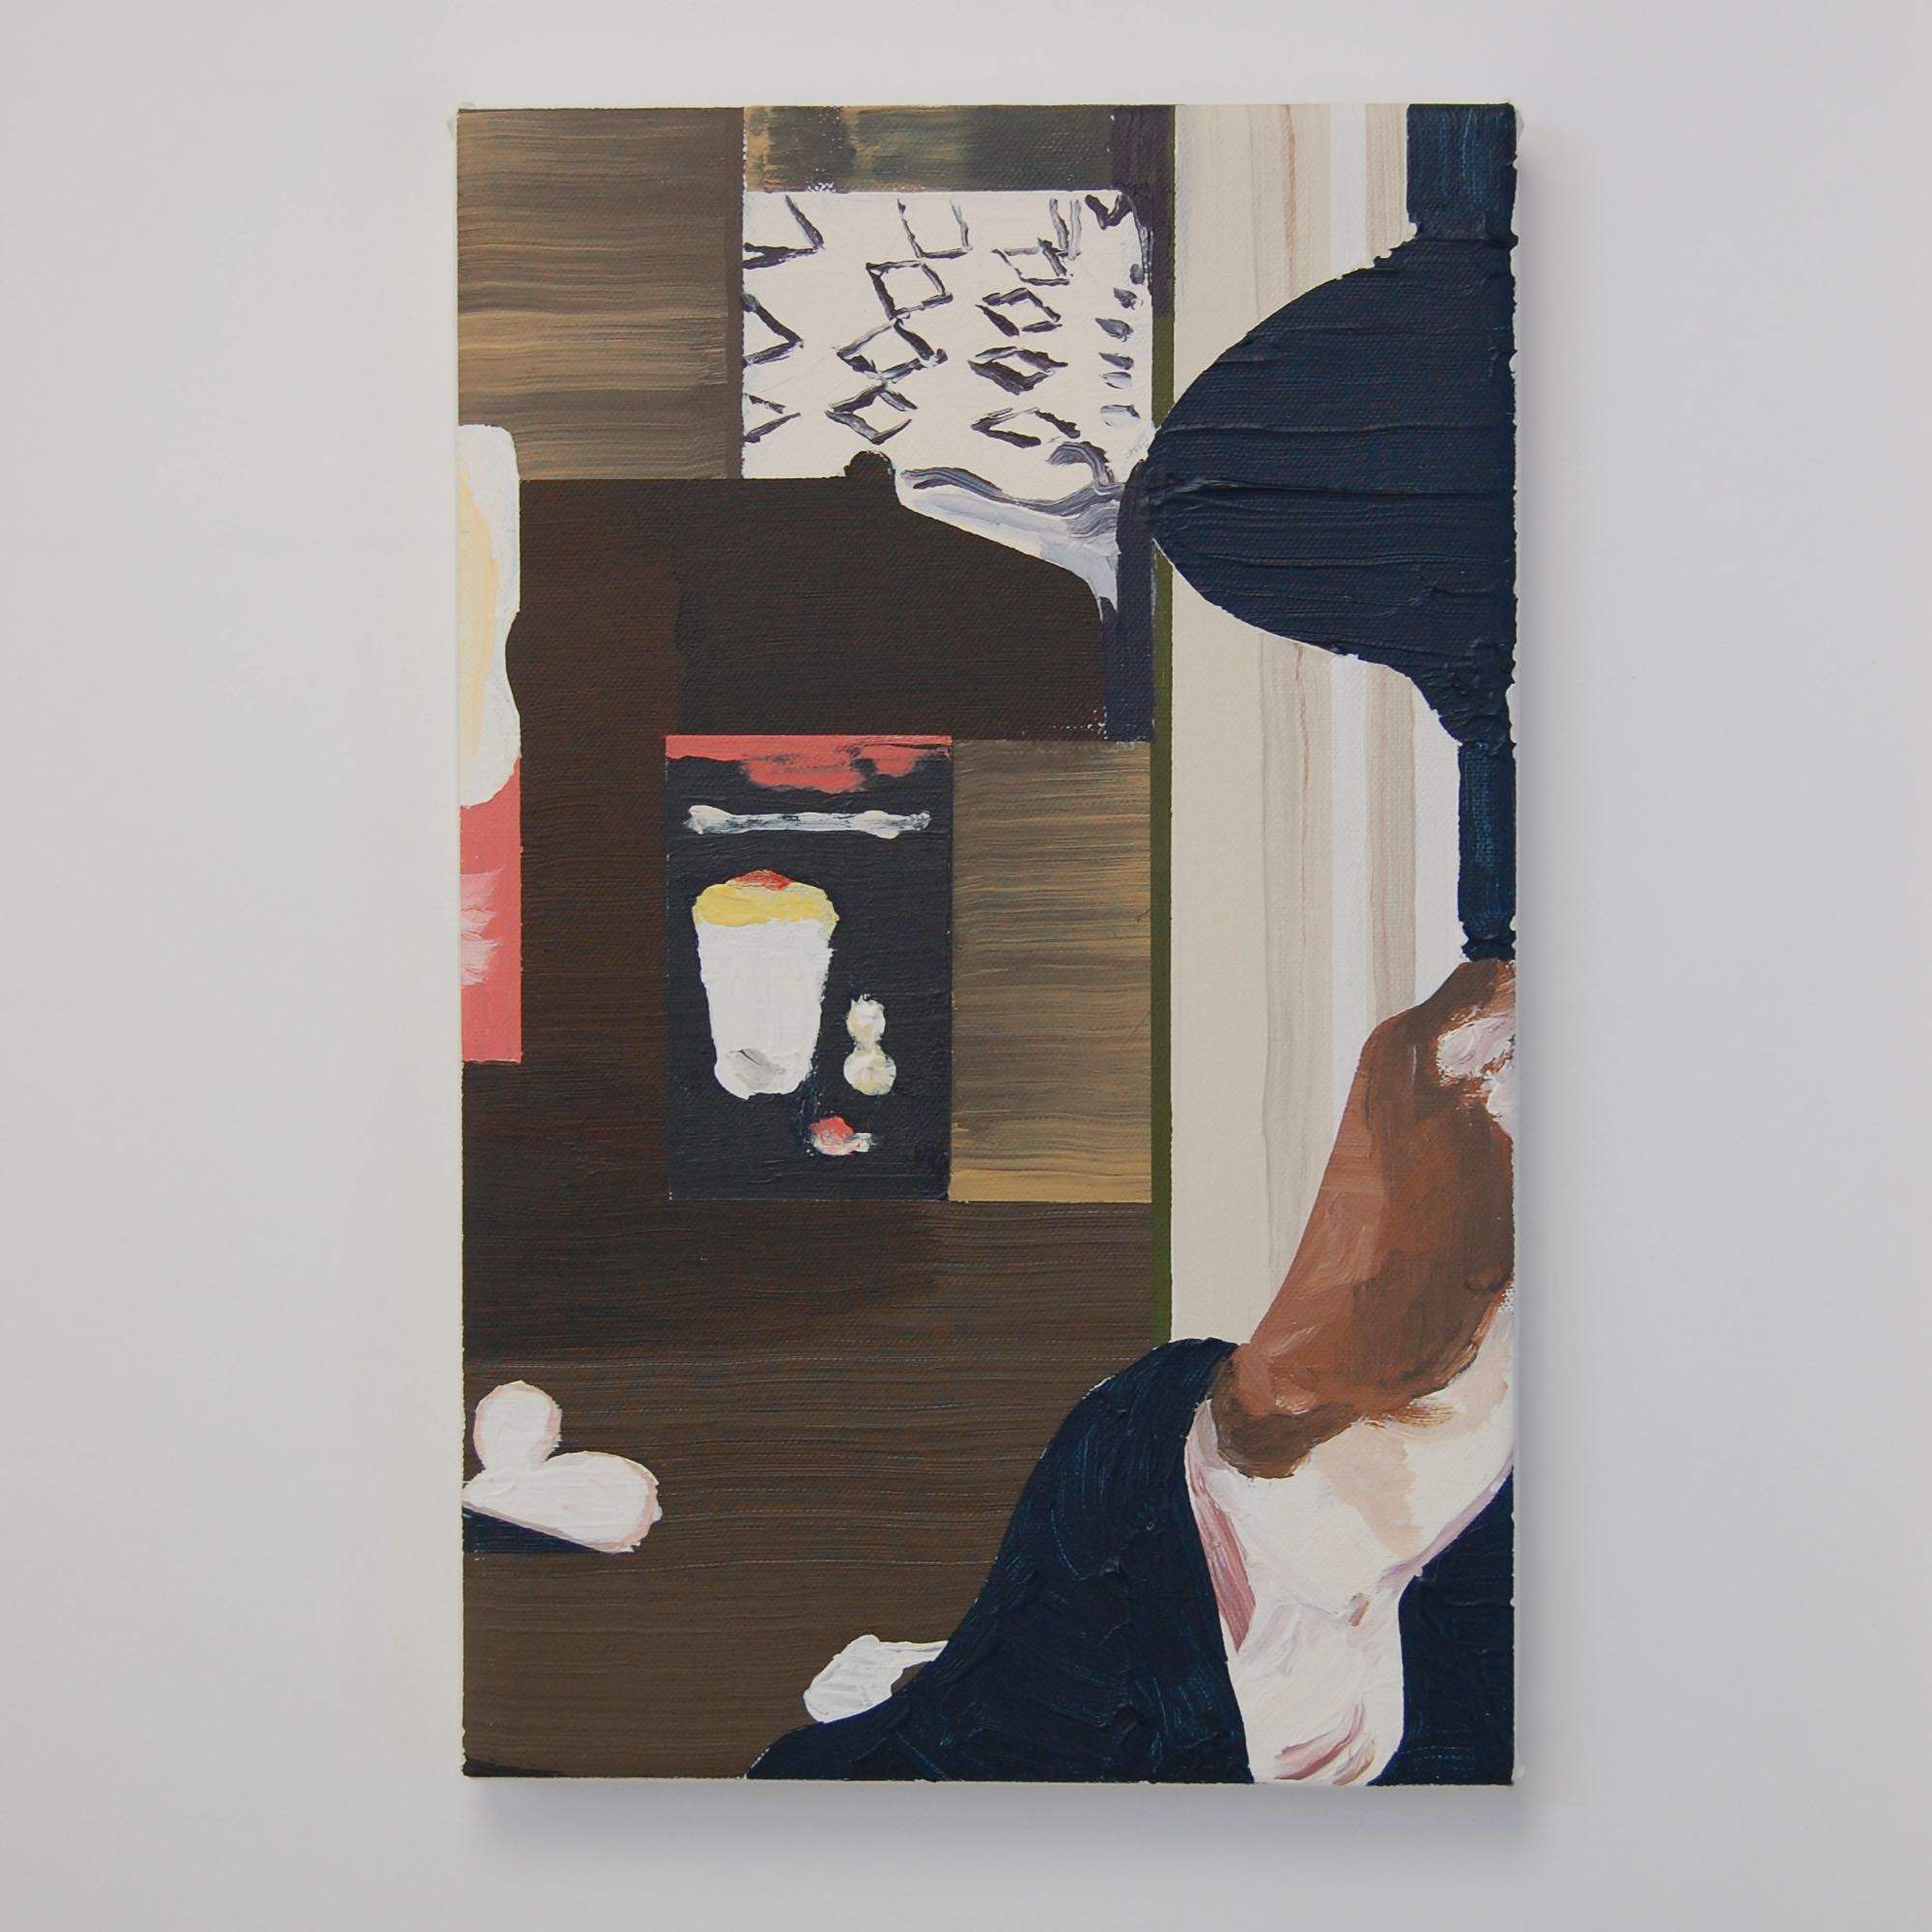 'hunch', 24 x 38 cm, acrylics on canvas, 2020